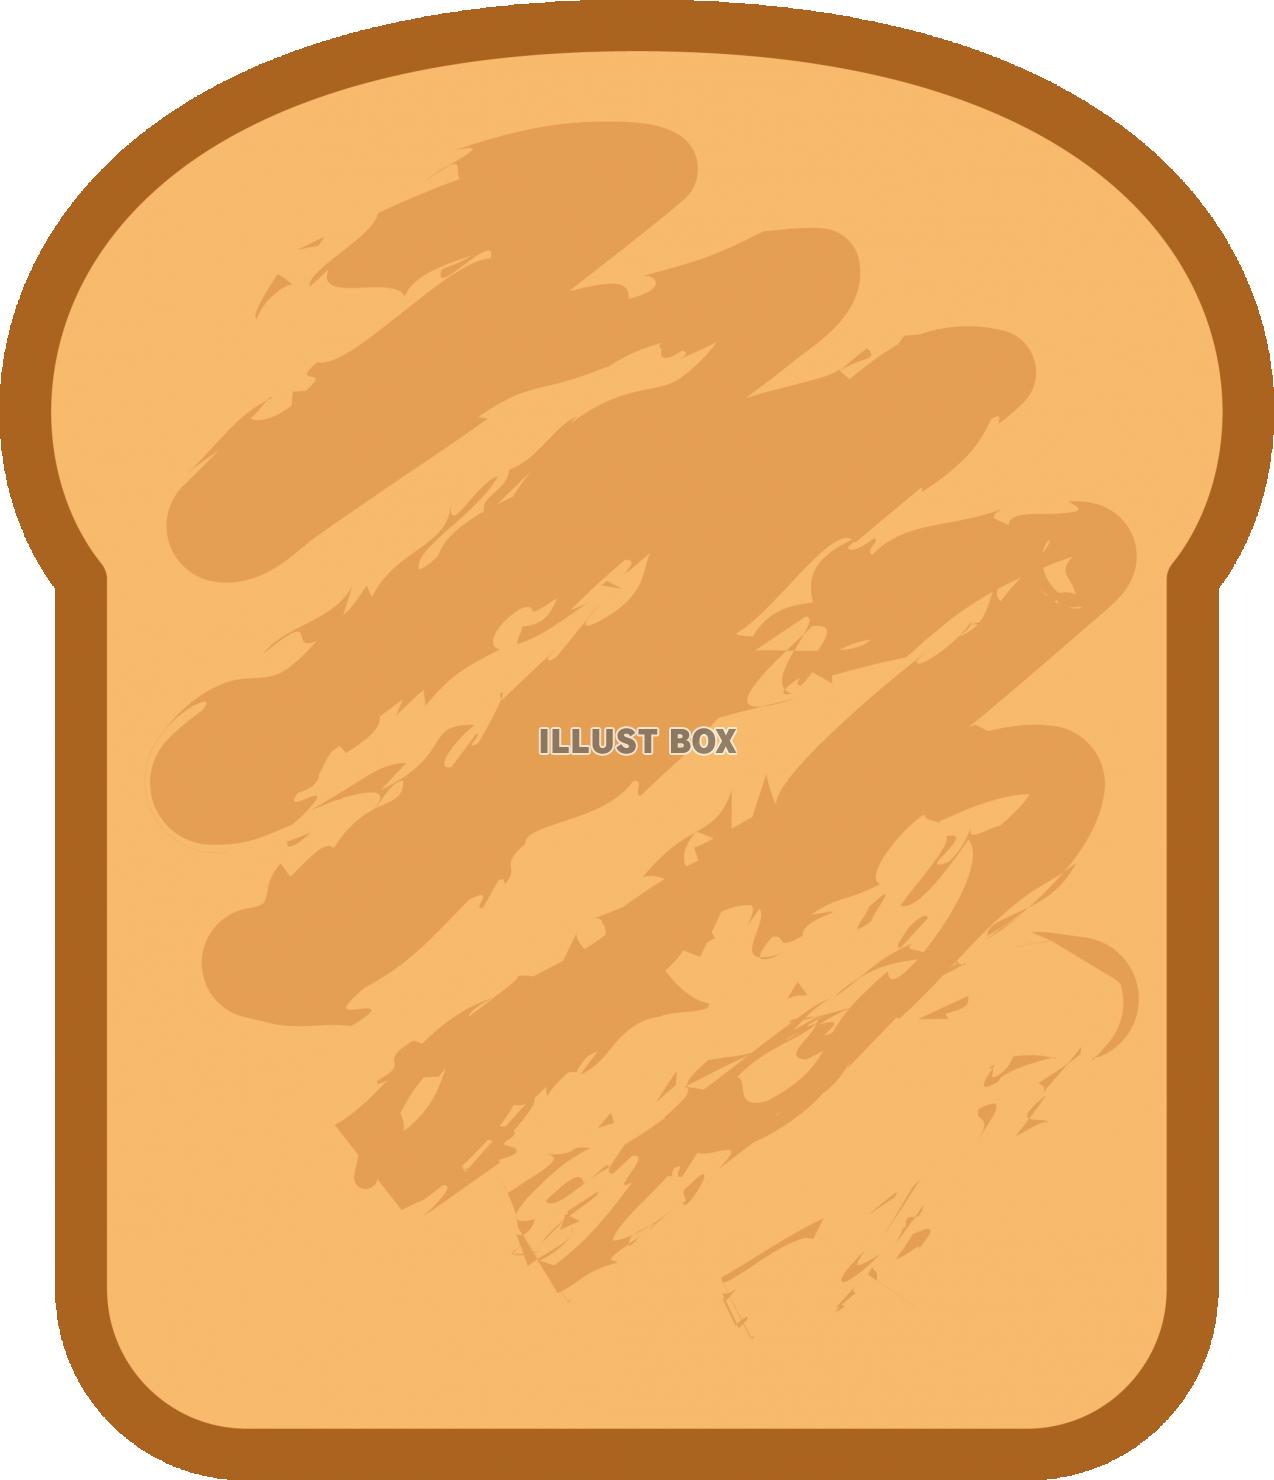 トースト　パン　食パン